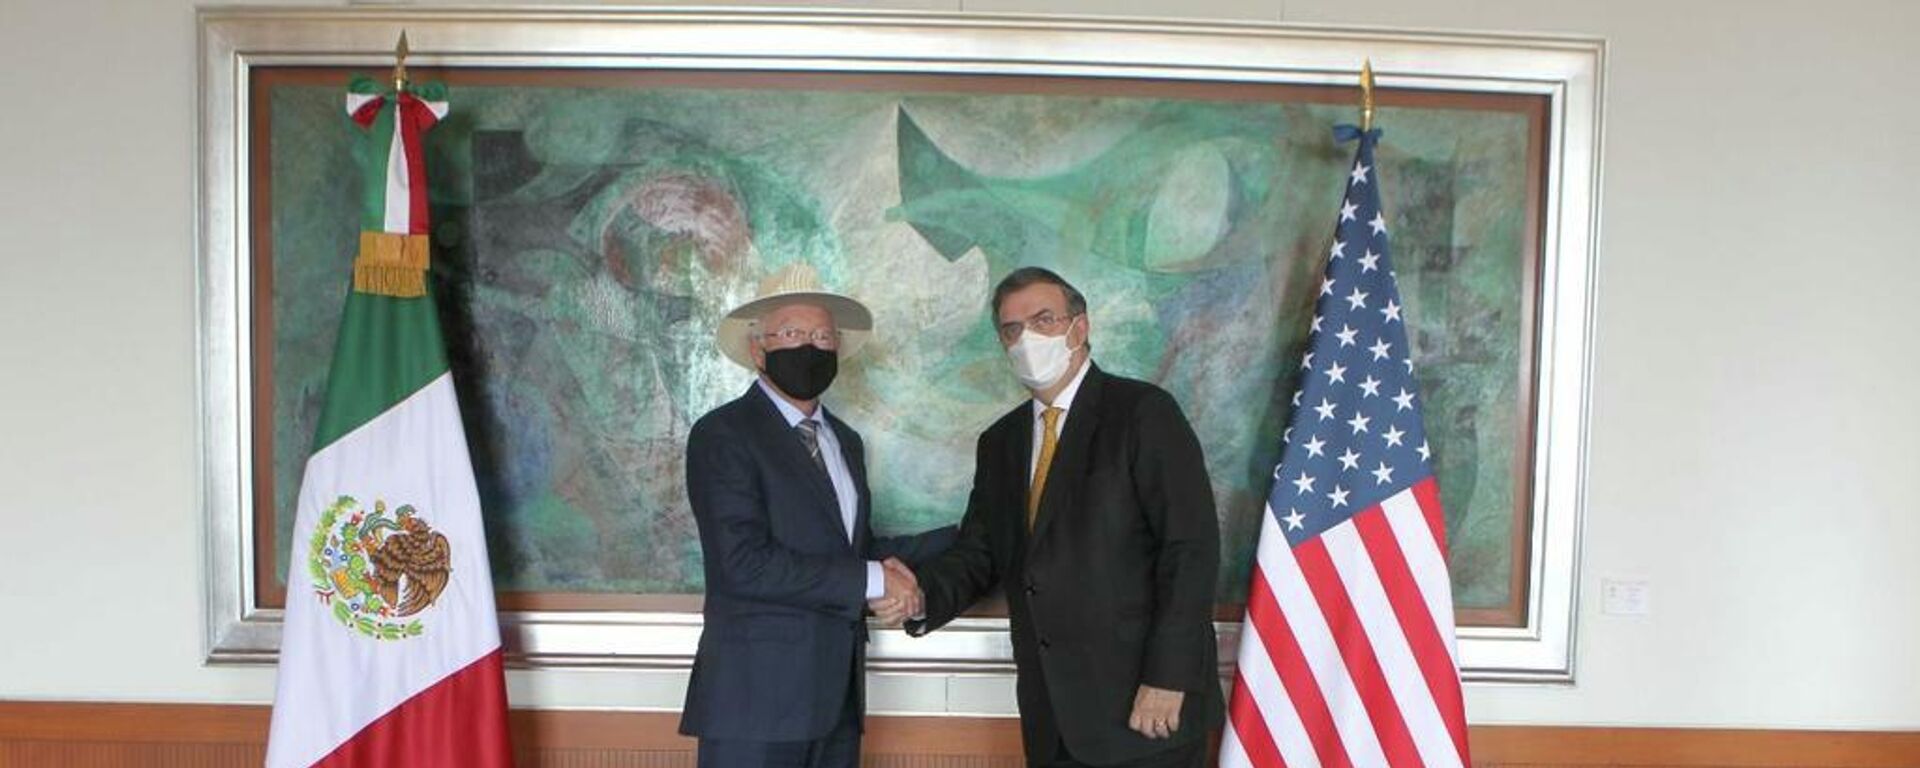 Ken Salazar, embajador de EEUU en México, y Marcelo Ebrard, canciller mexicano - Sputnik Mundo, 1920, 08.10.2021